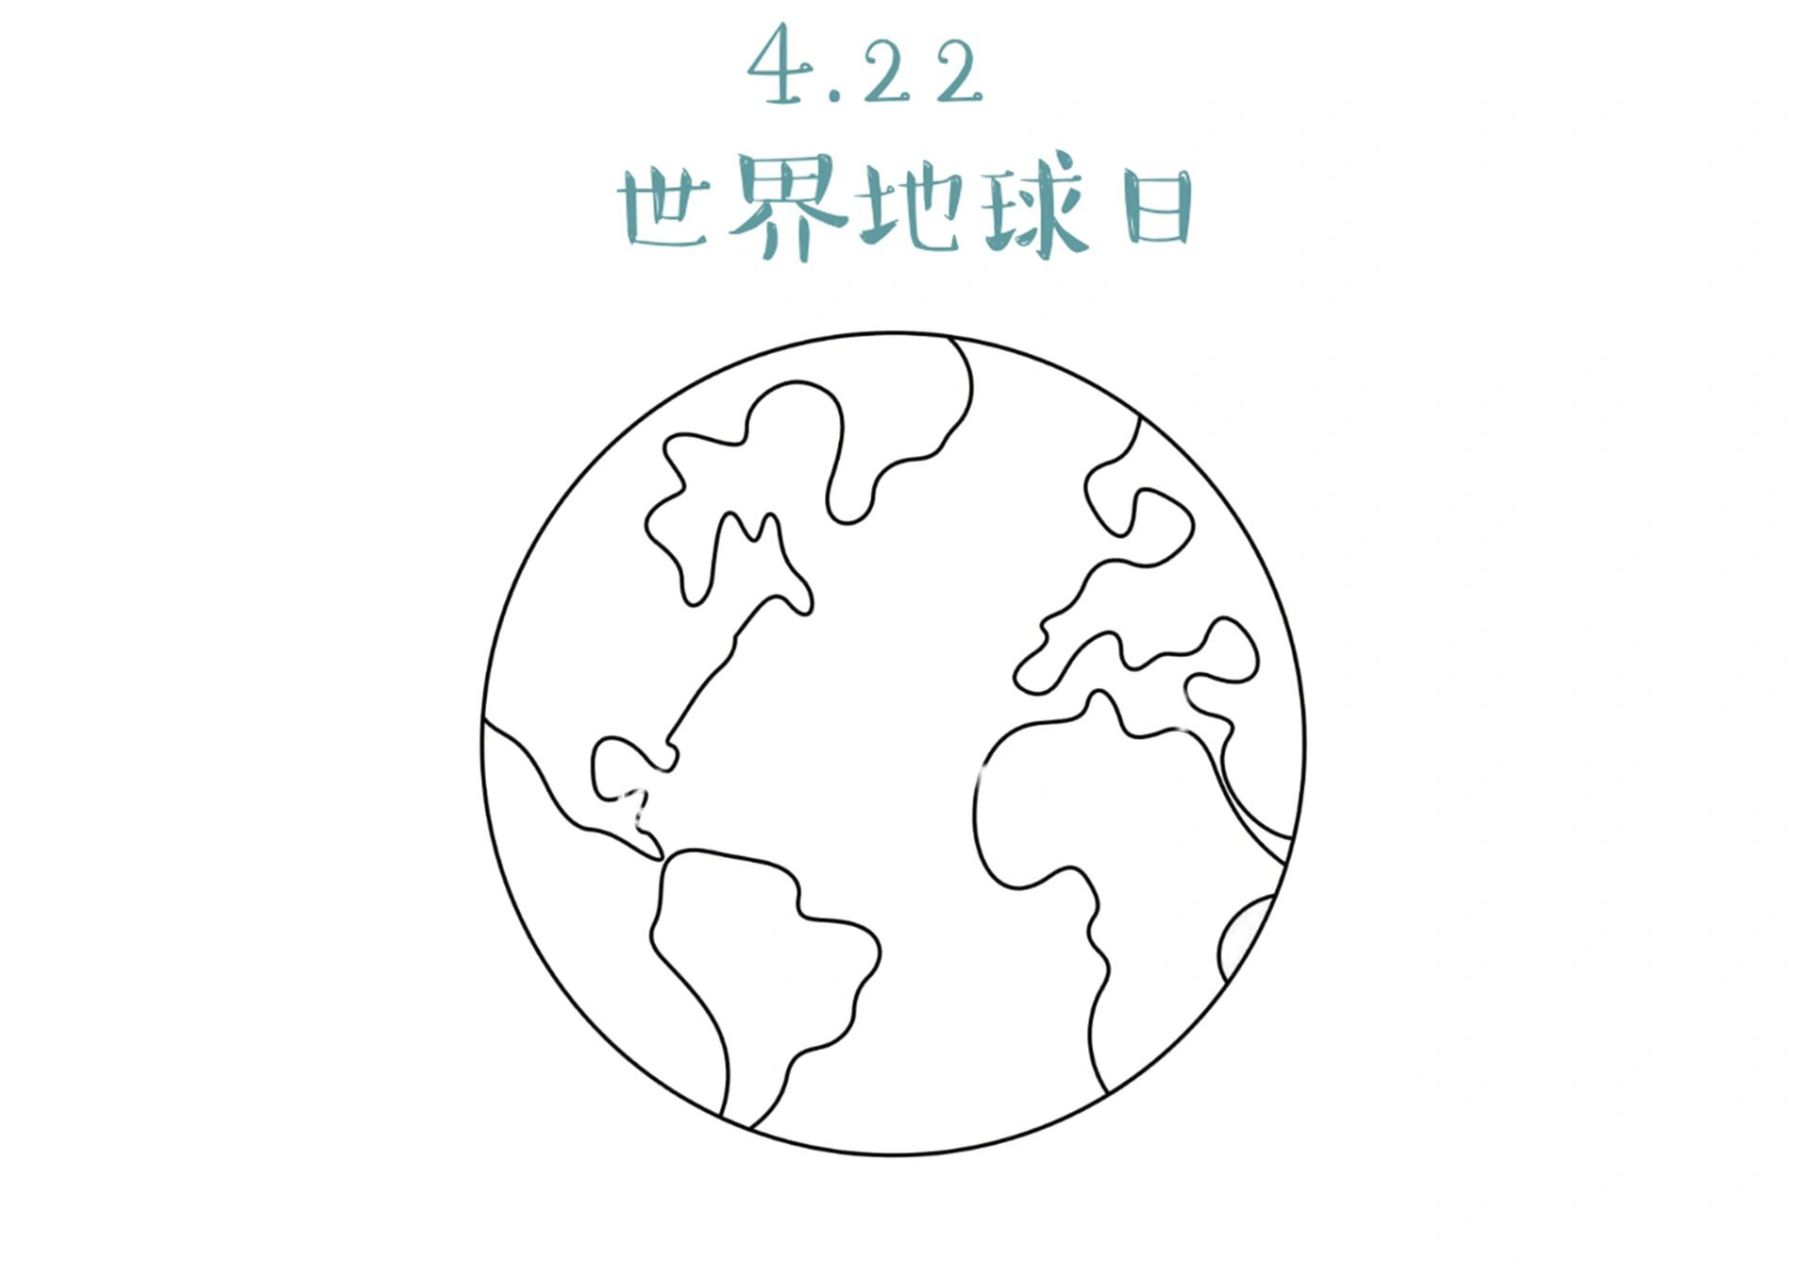 地球日主题:彩色石地球91 16615准备蓝色和绿色彩色石头代表着